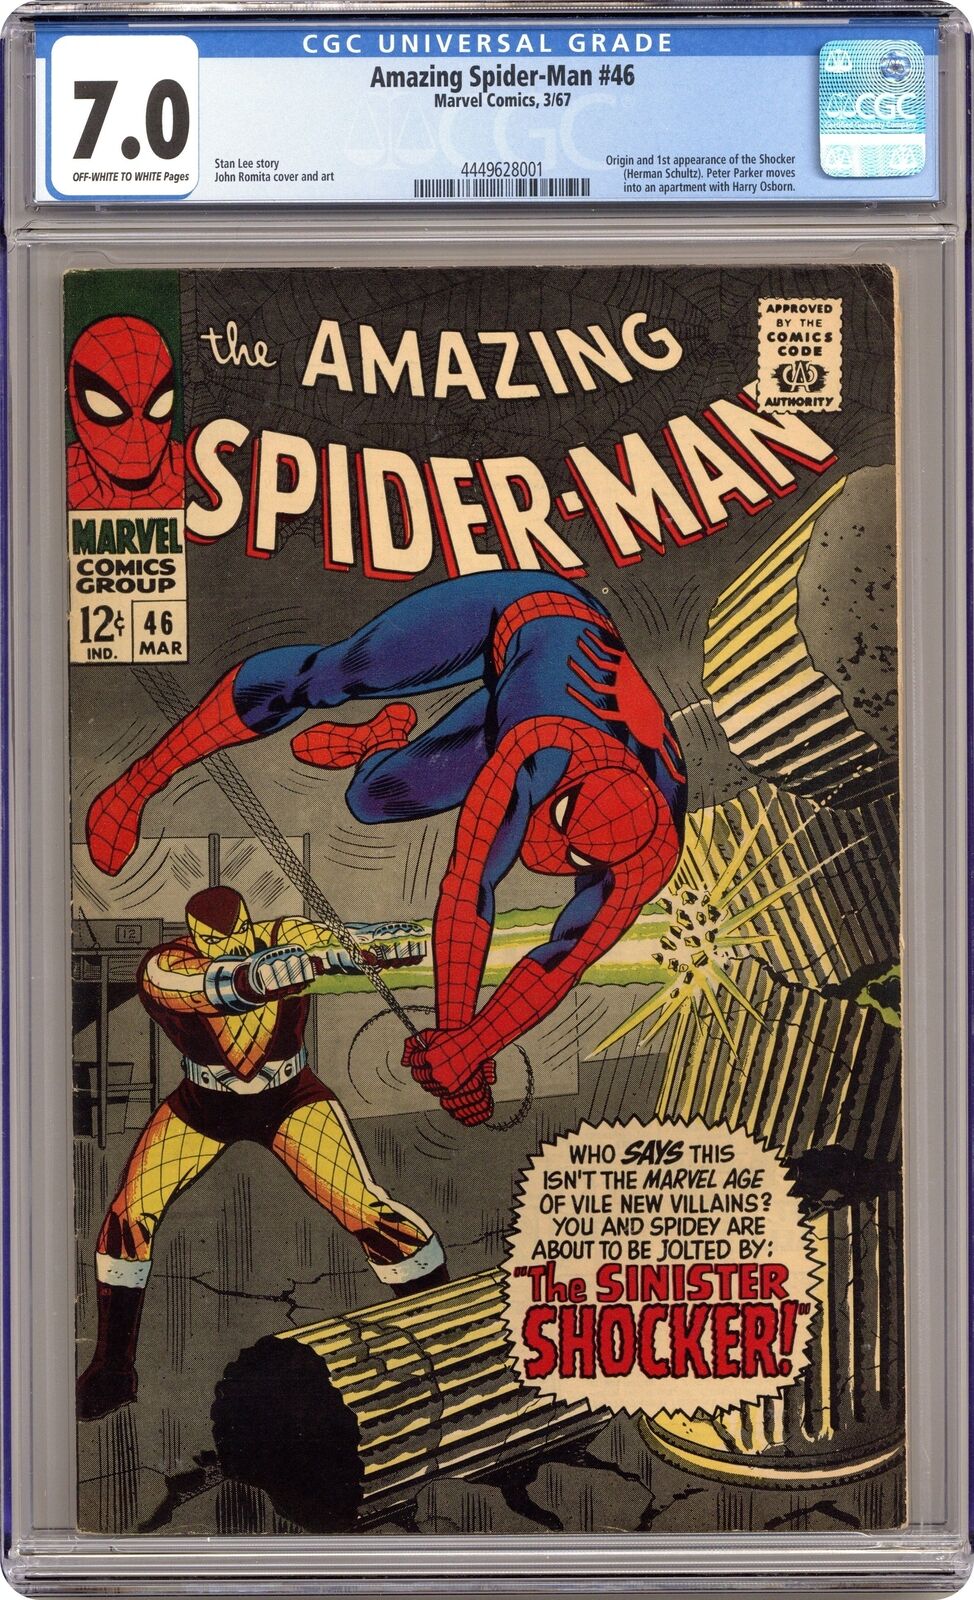 Amazing Spider-Man #46 CGC 7.0 1967 4449628001 1st app. Shocker